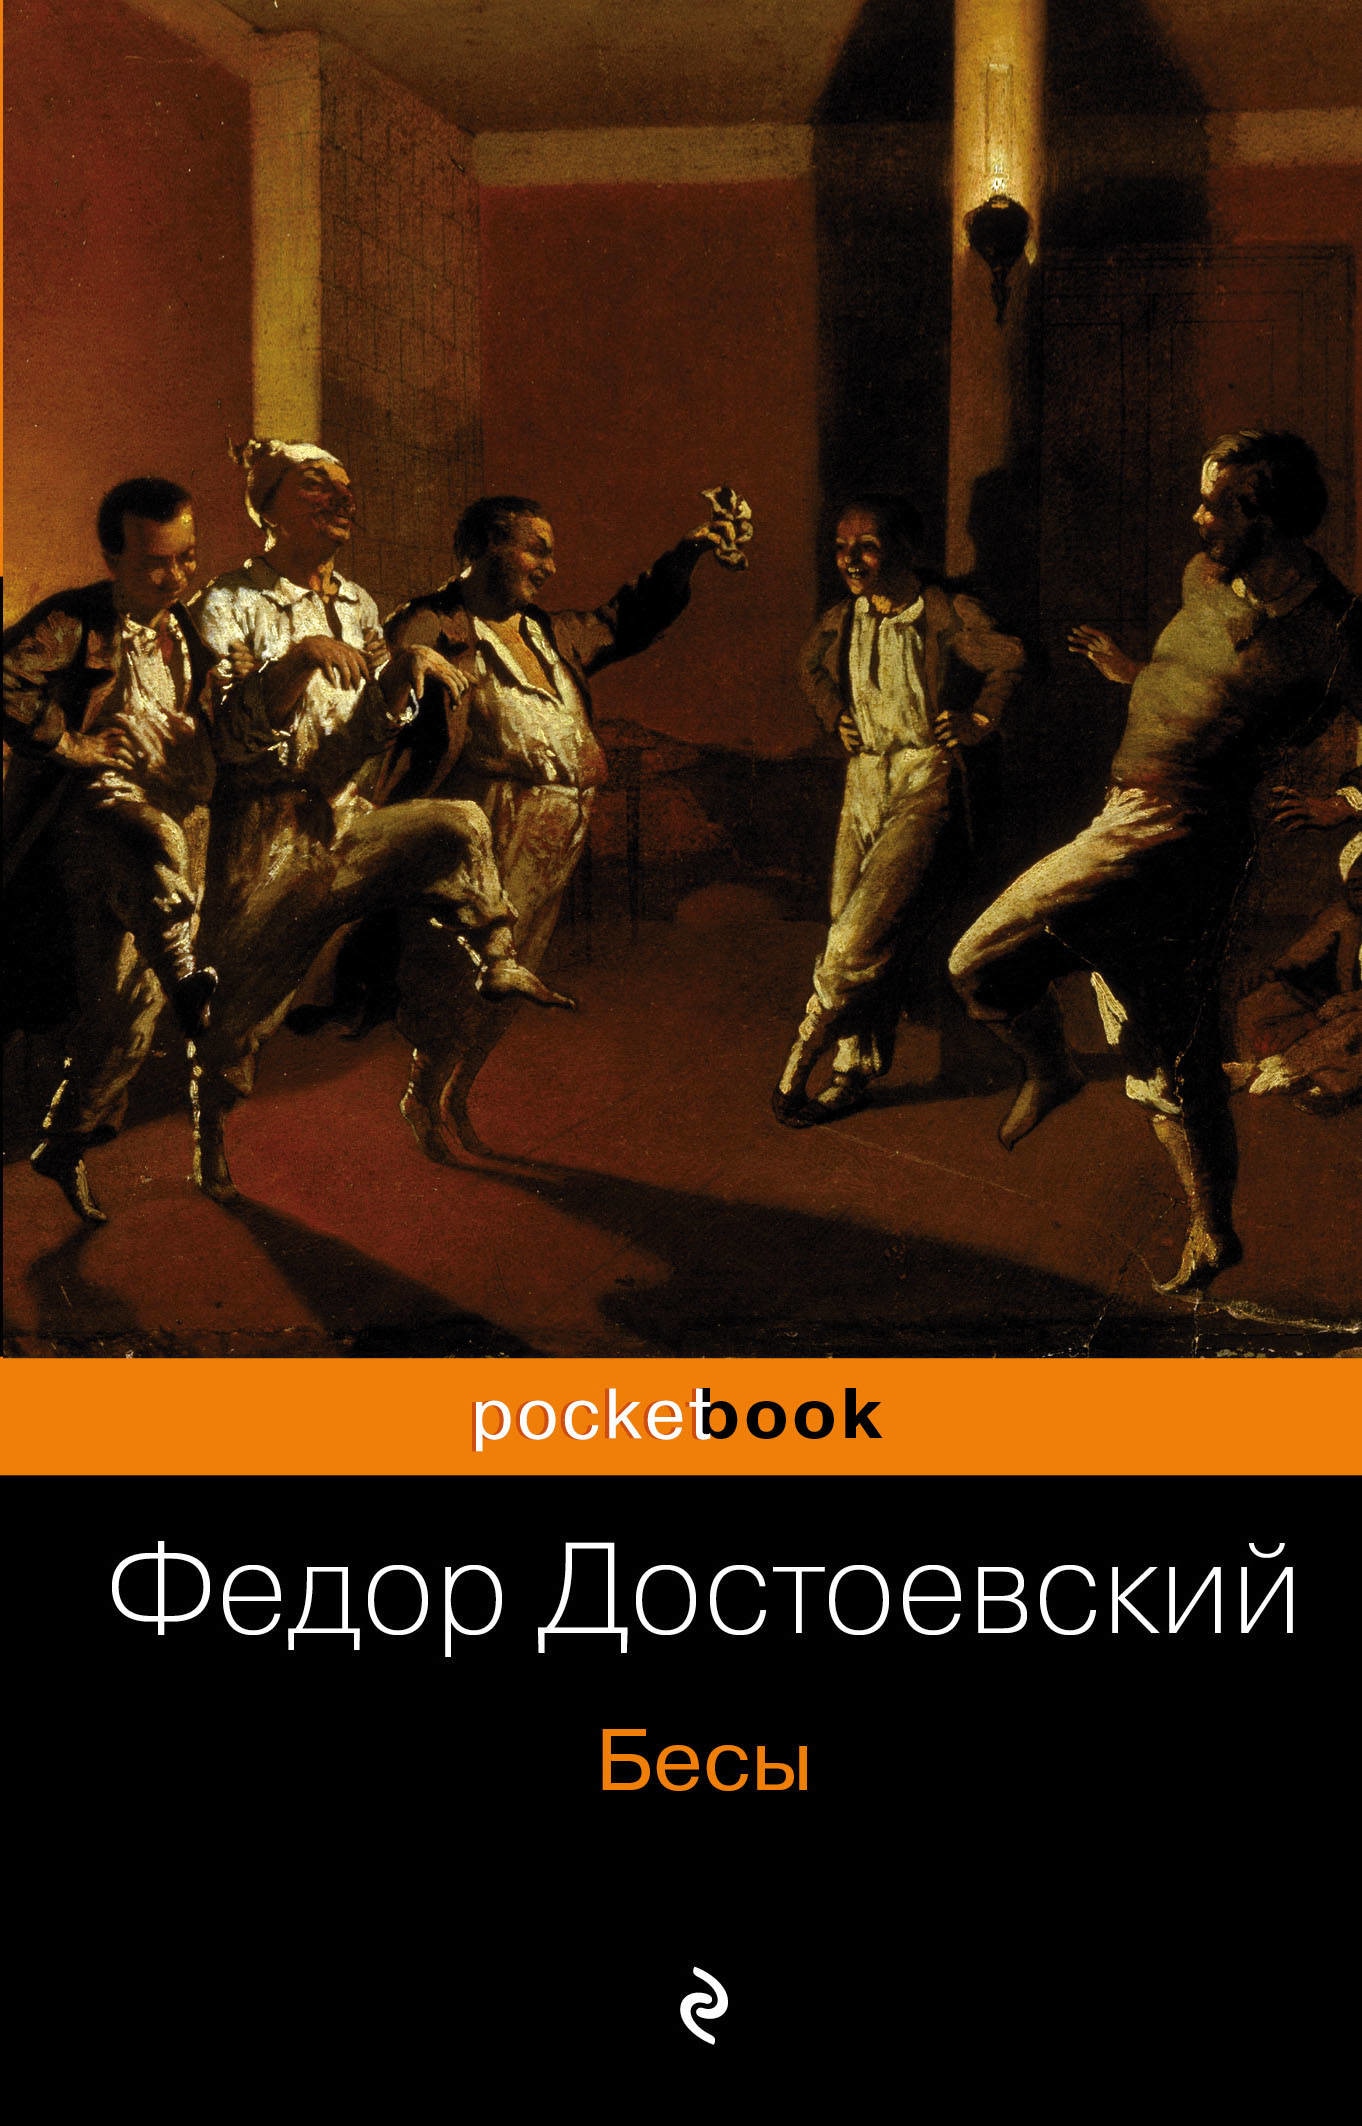 Книга «Бесы» Федор Достоевский — 6 сентября 2019 г.